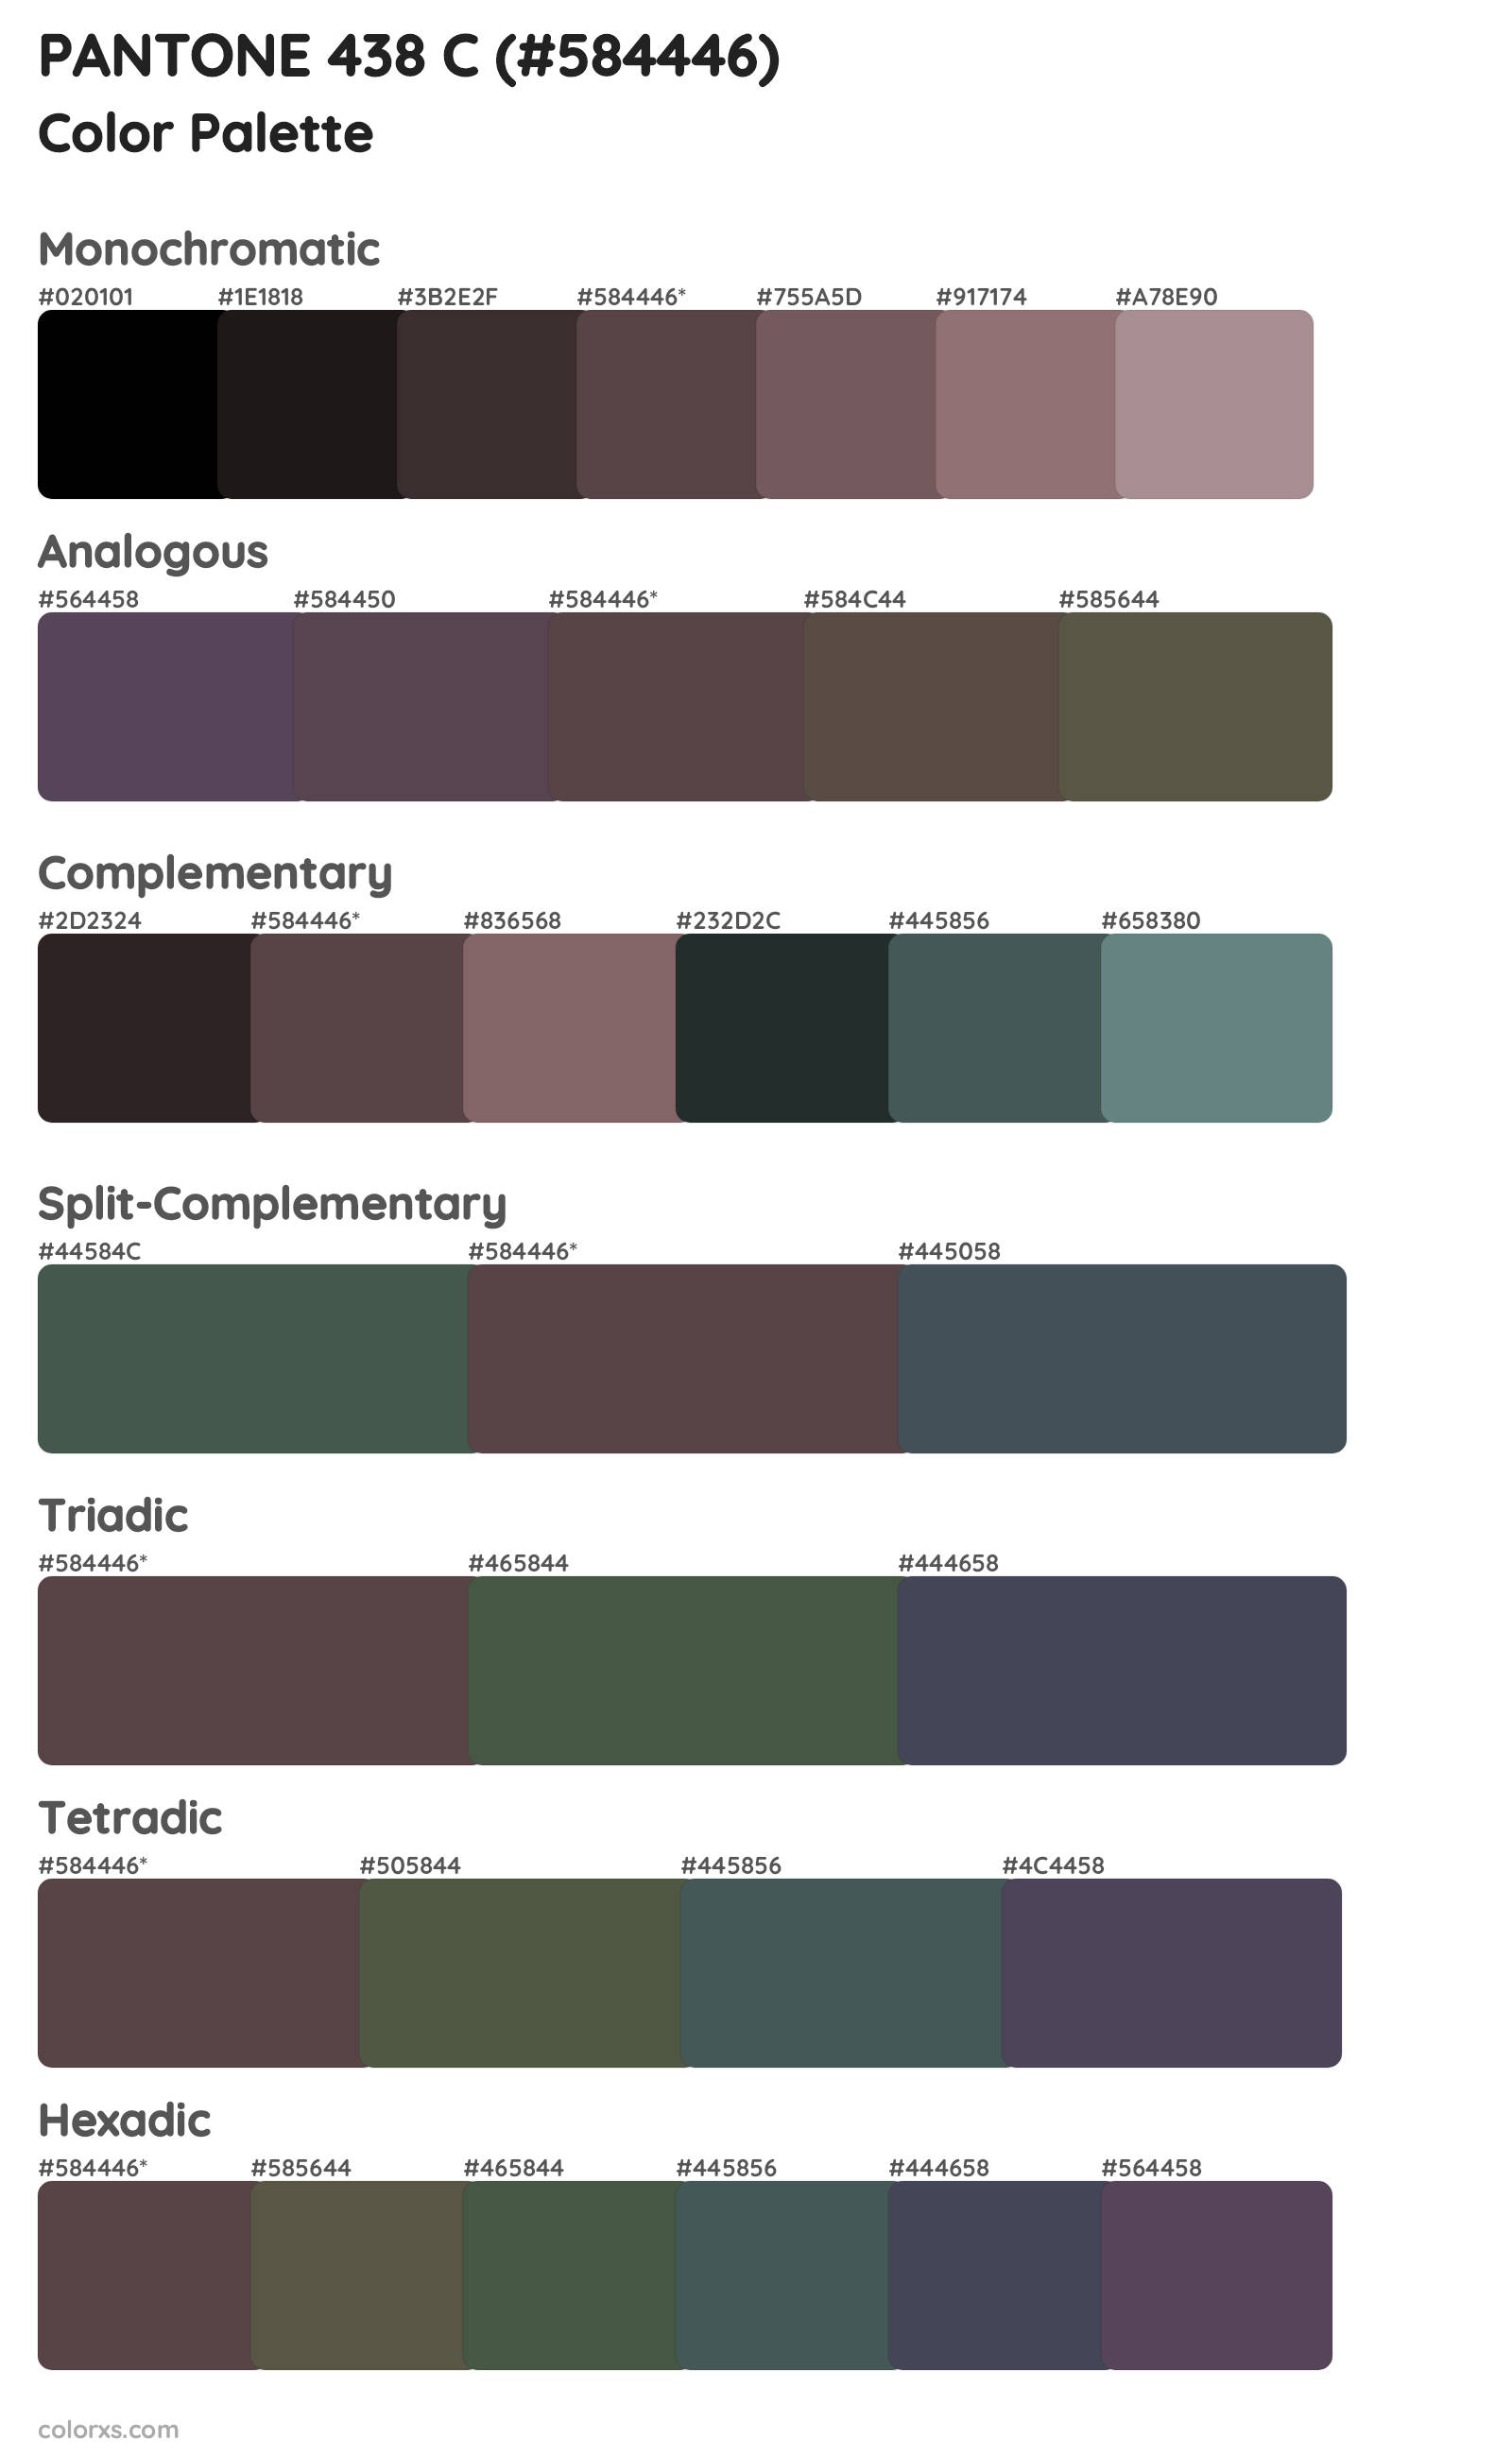 PANTONE 438 C Color Scheme Palettes